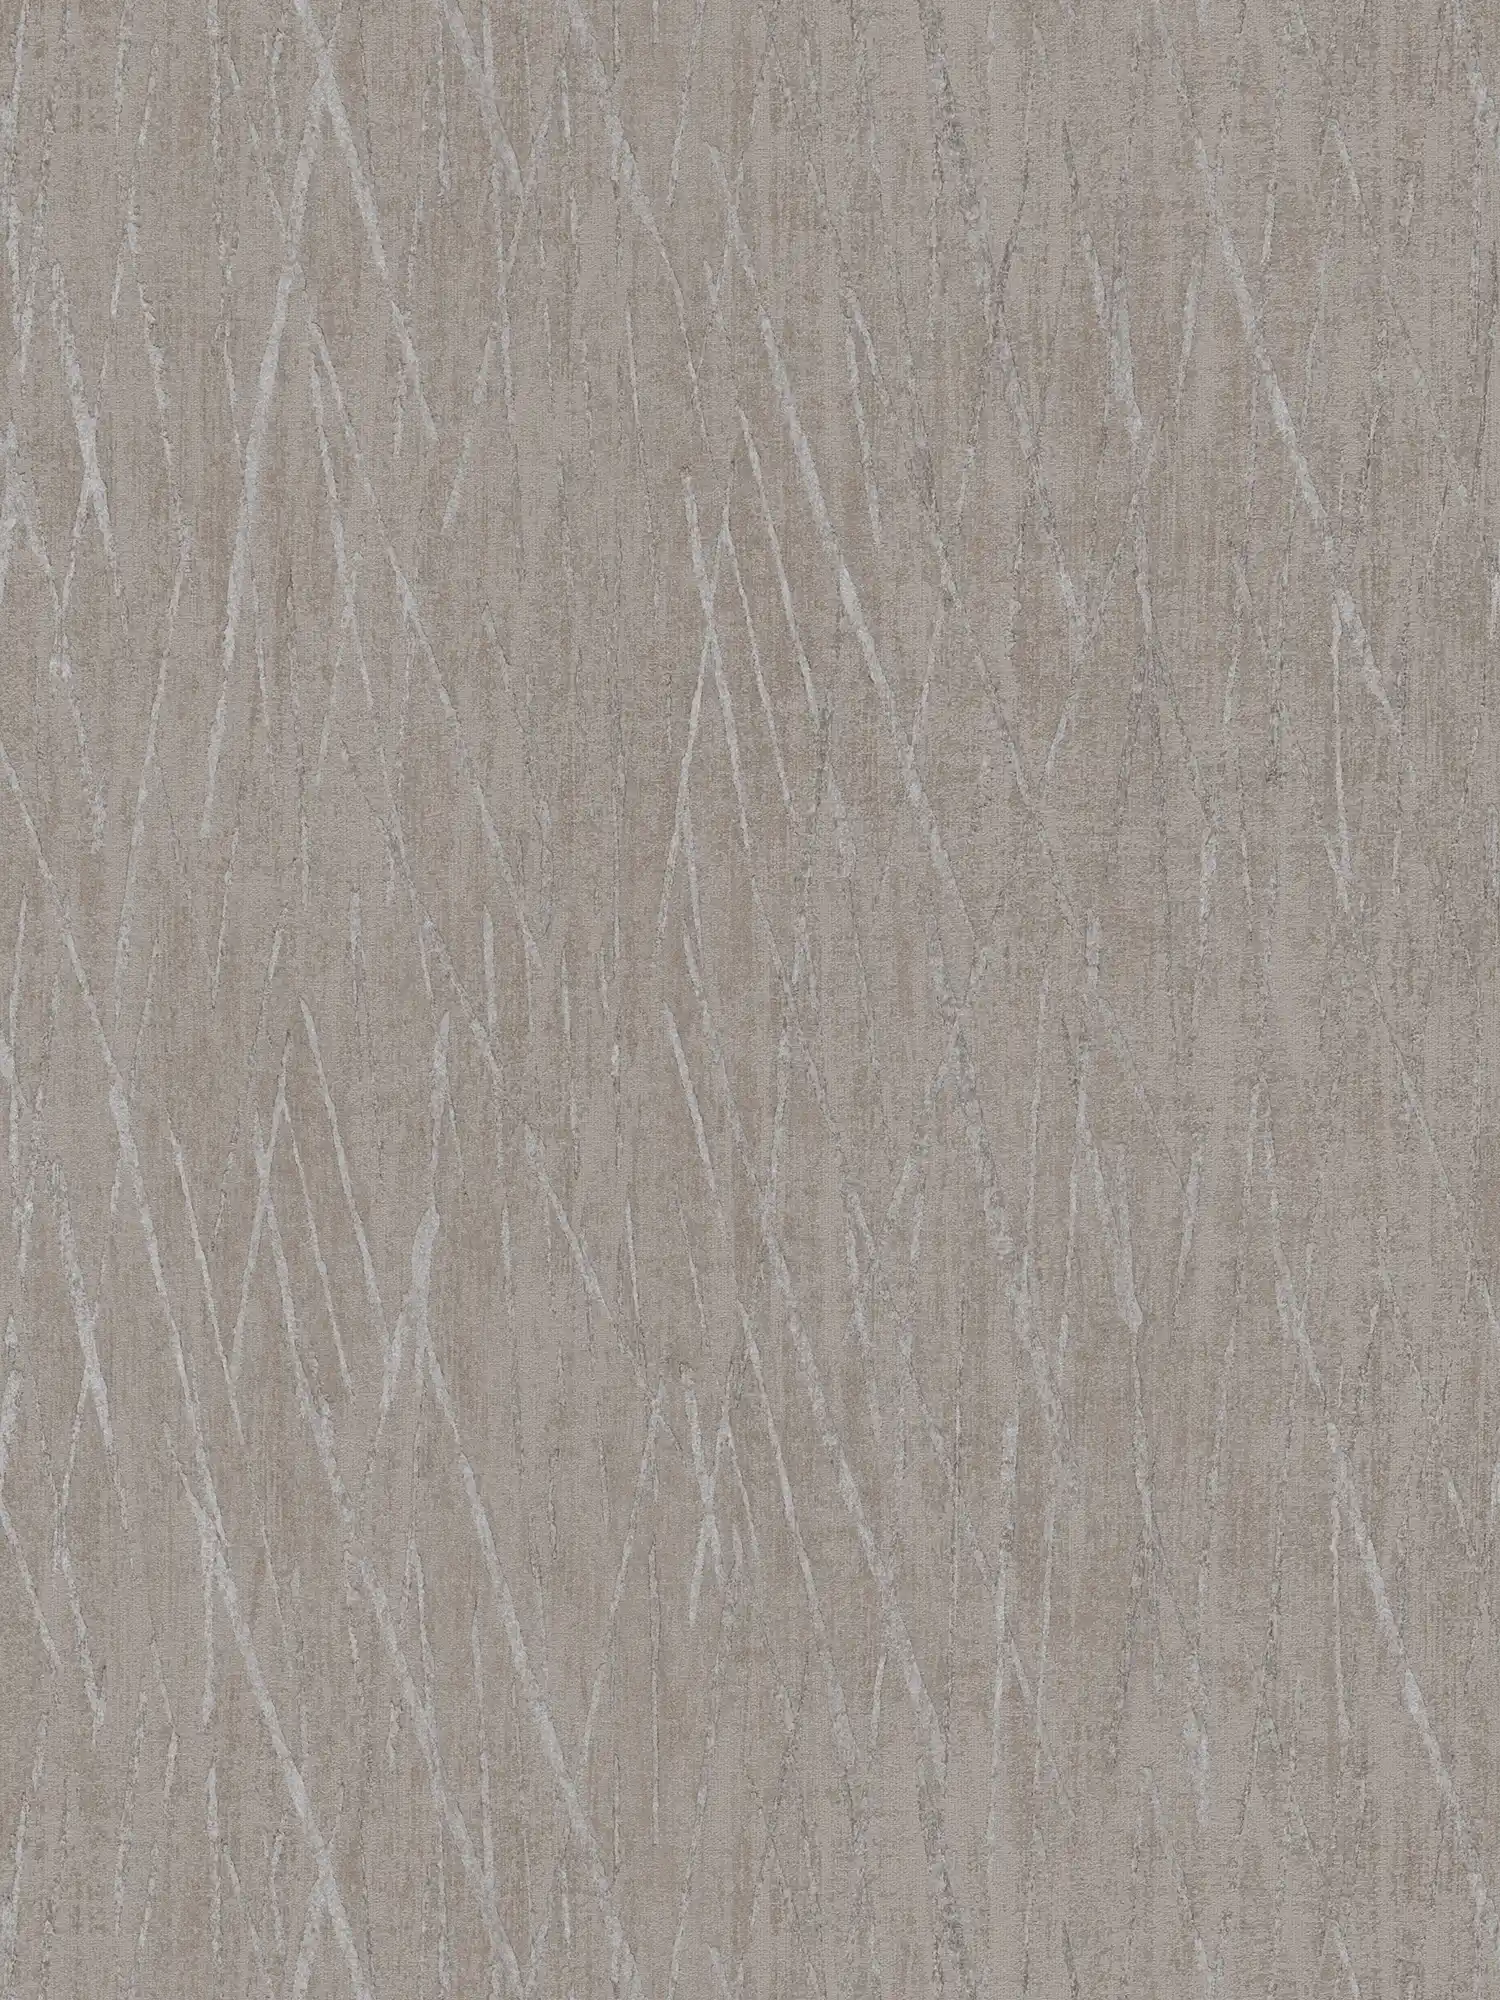 Scandinavian wallpaper with metallic design - beige, grey
